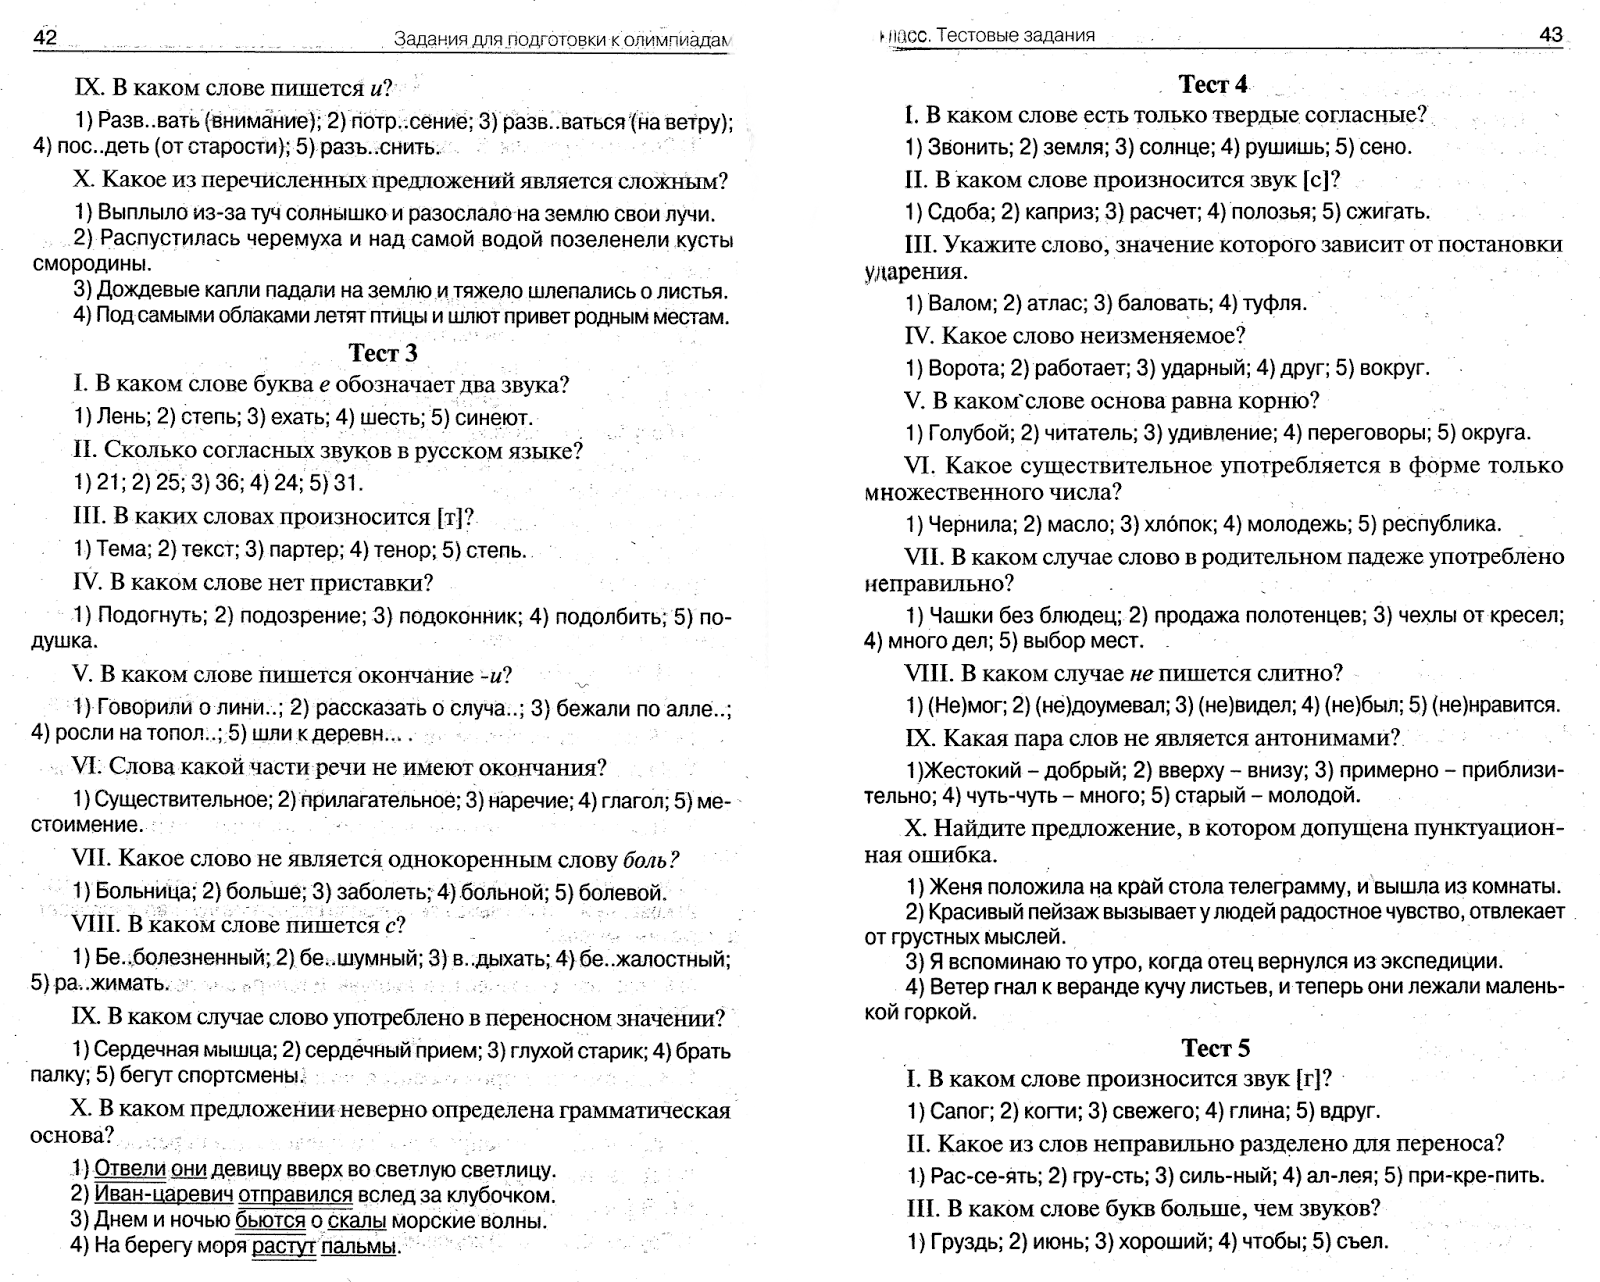 Тесты По Русскому Языку 2 Класс С Ответами Бесплатно